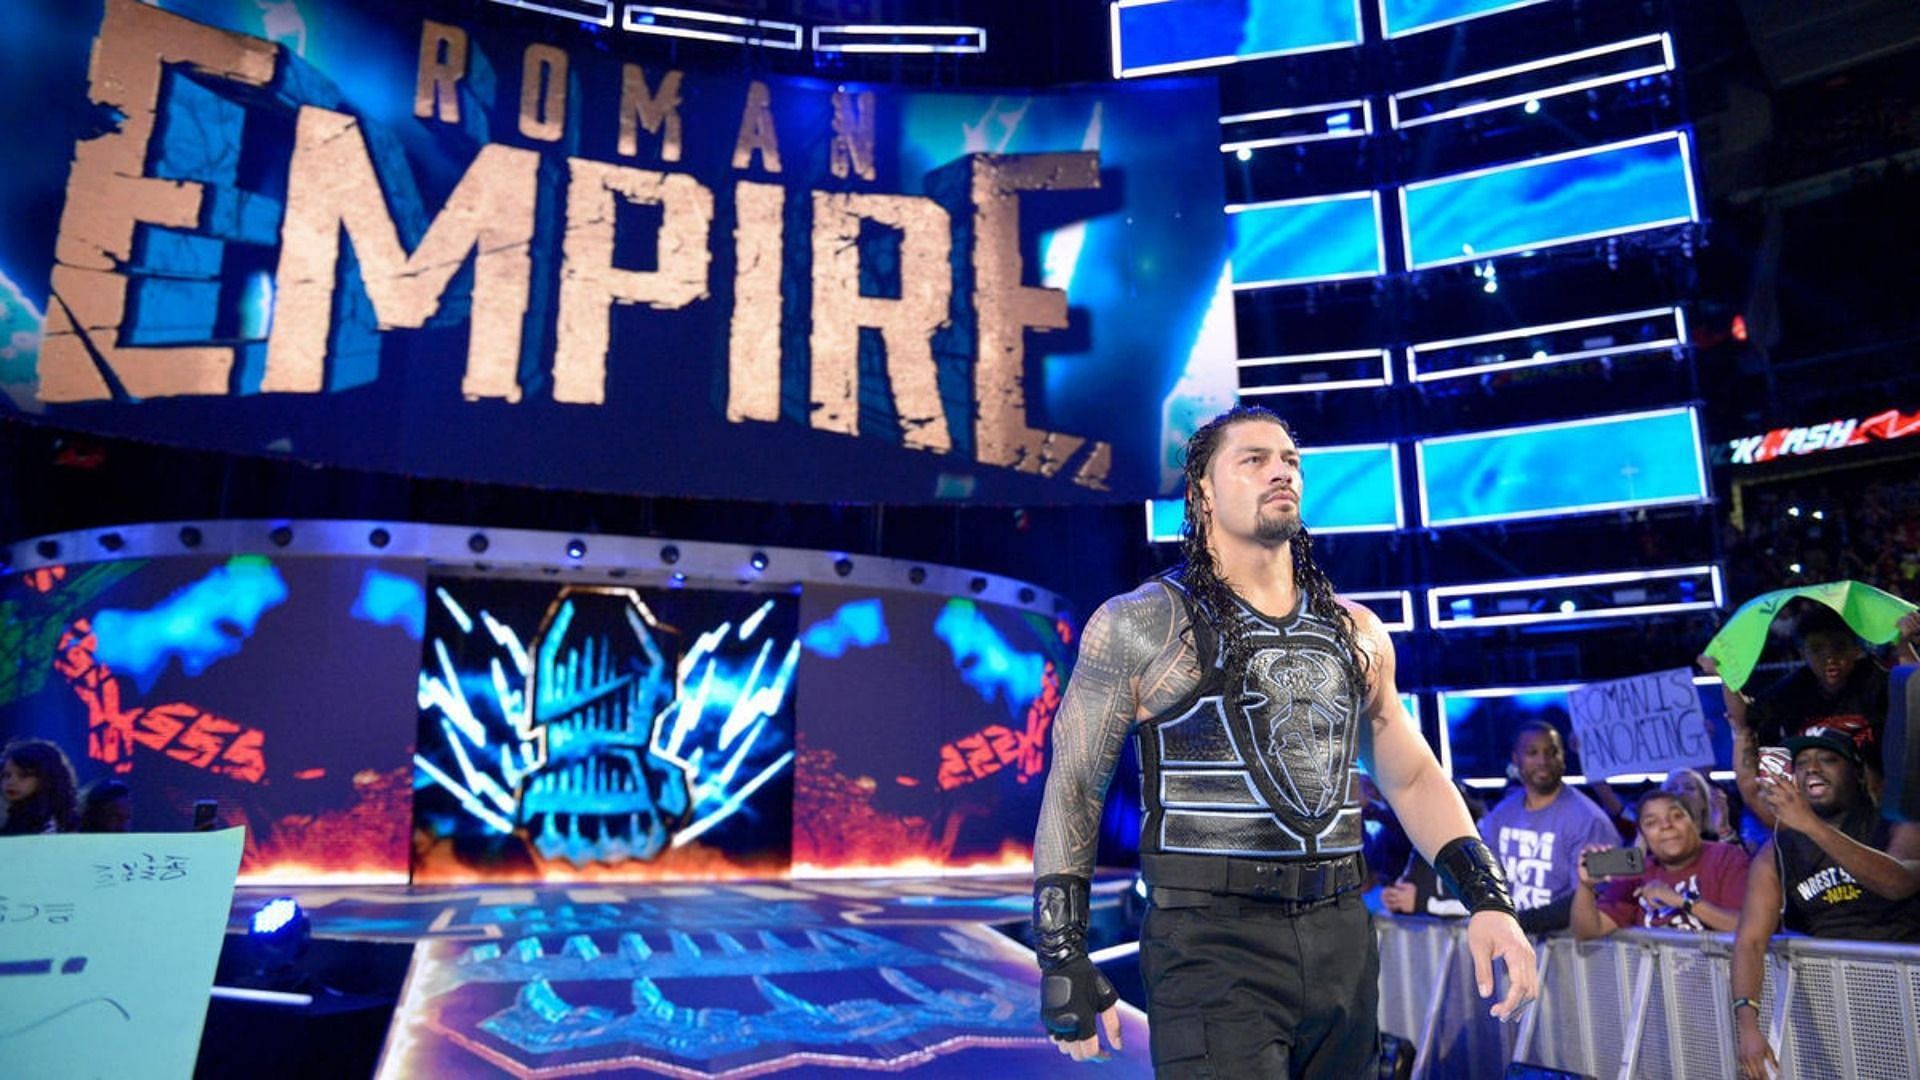 Roman Reigns makes his entrance at WWE Backlash.